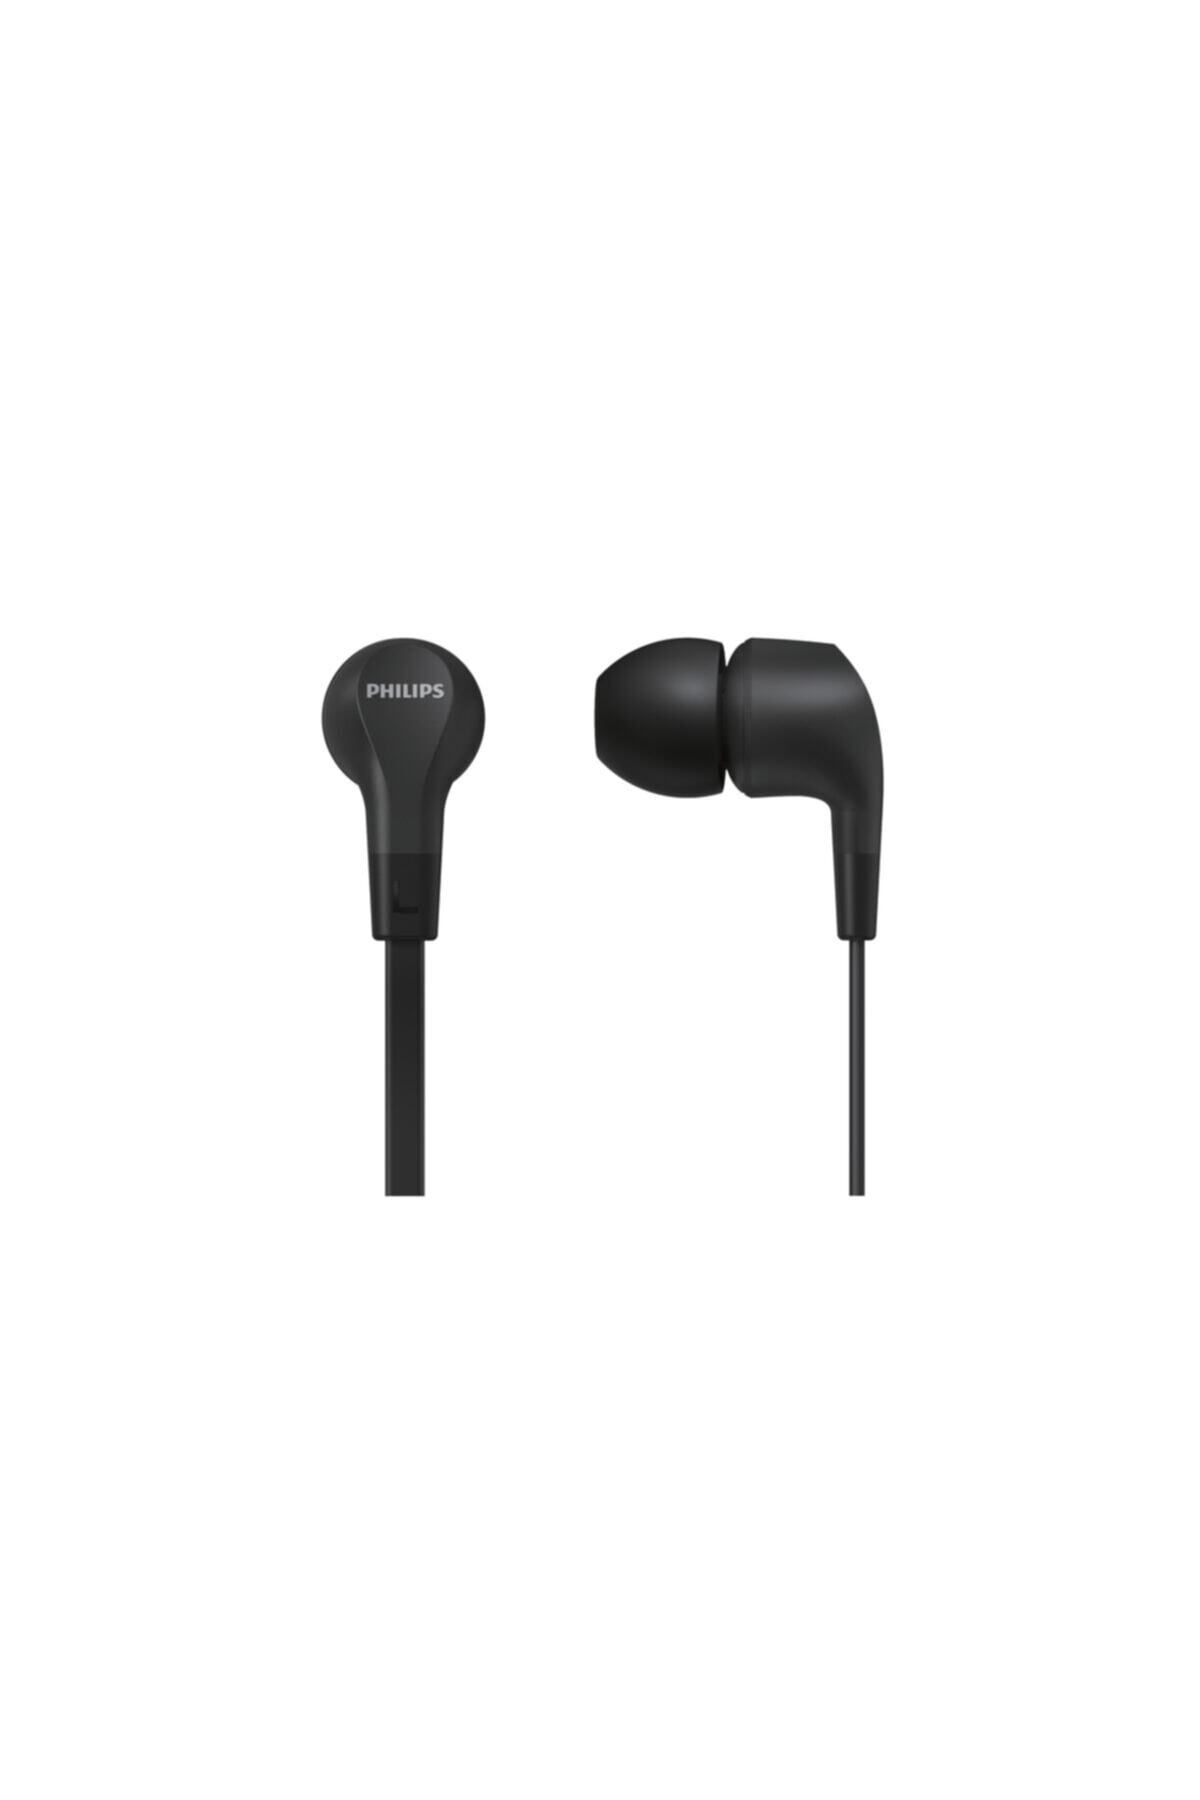 Philips TAE1105 Kablolu Kulak İçi Kulaklık (Mikrofonlu) Siyah